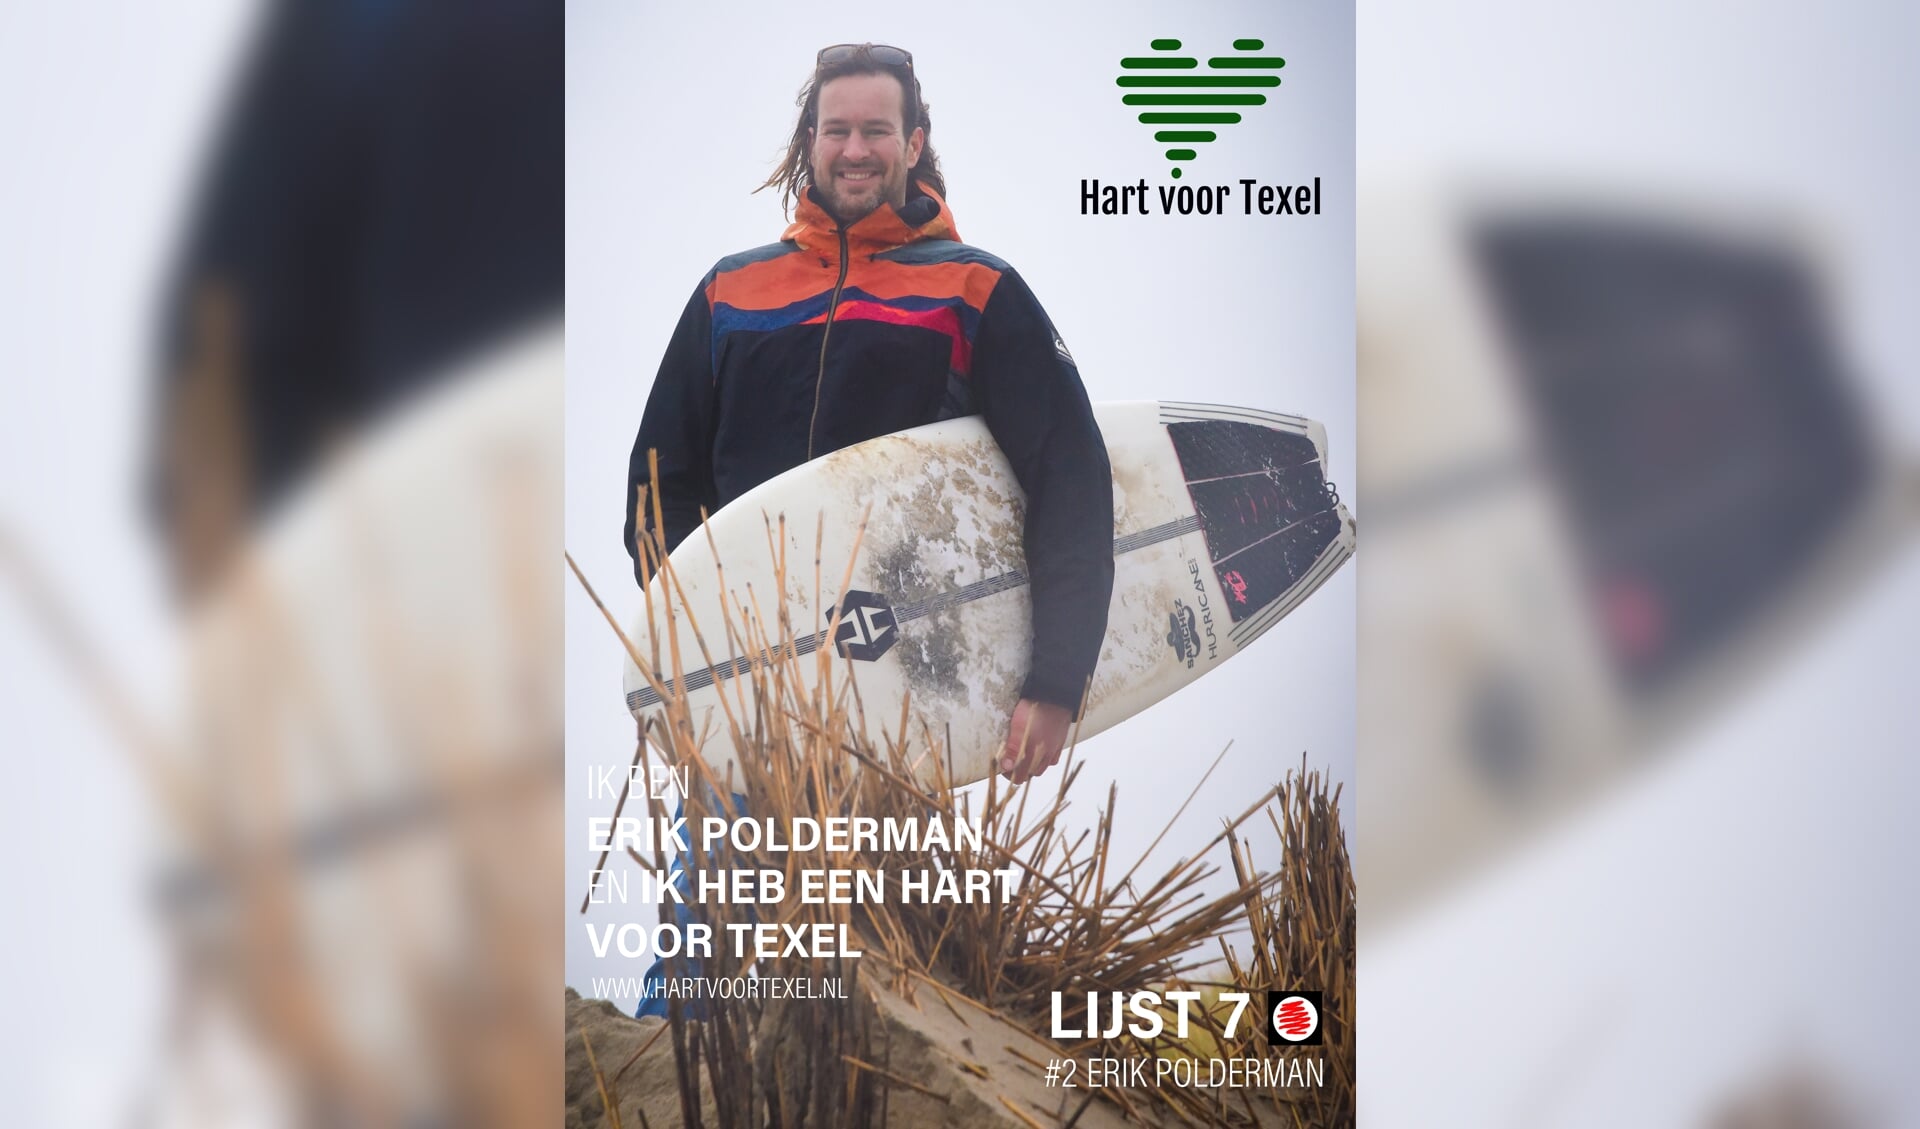 De nummer twee op de lijst van Hart voor Texel: Erik Polderman